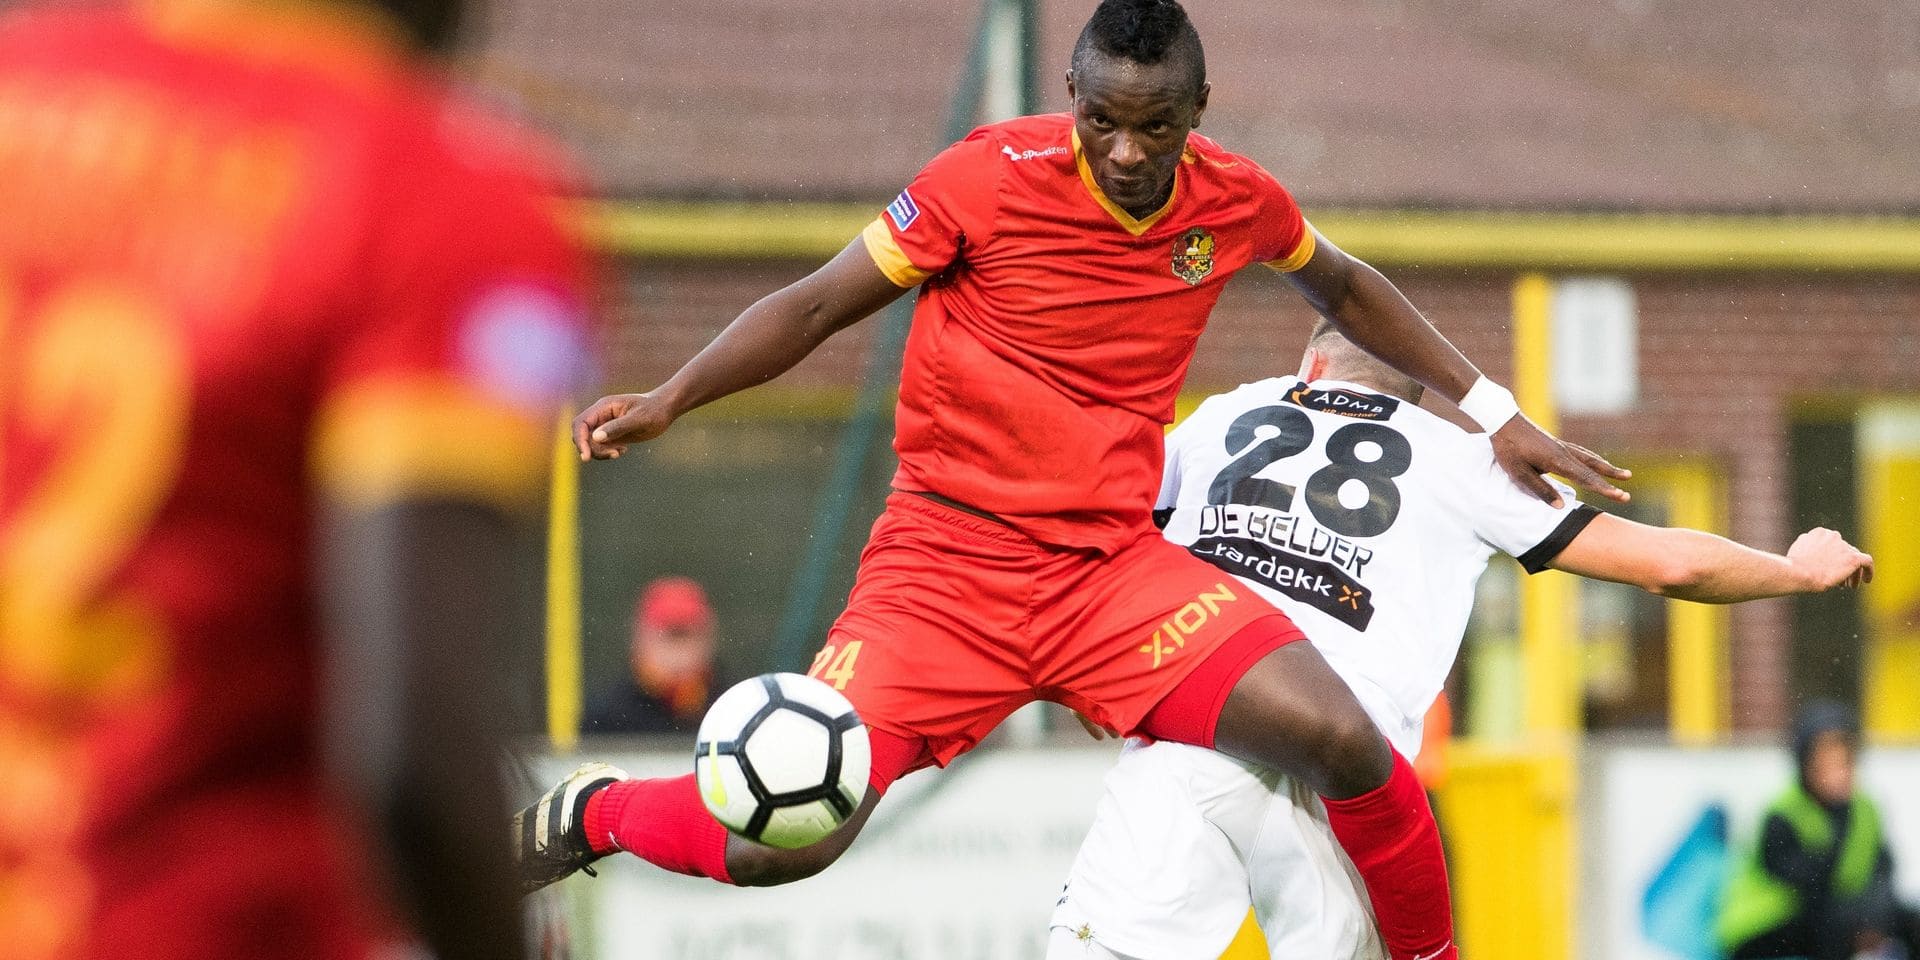 Salomon Nirisarike was an unused substitute for FC Urartu in their 2-0 defeat to Noravank in the cup final